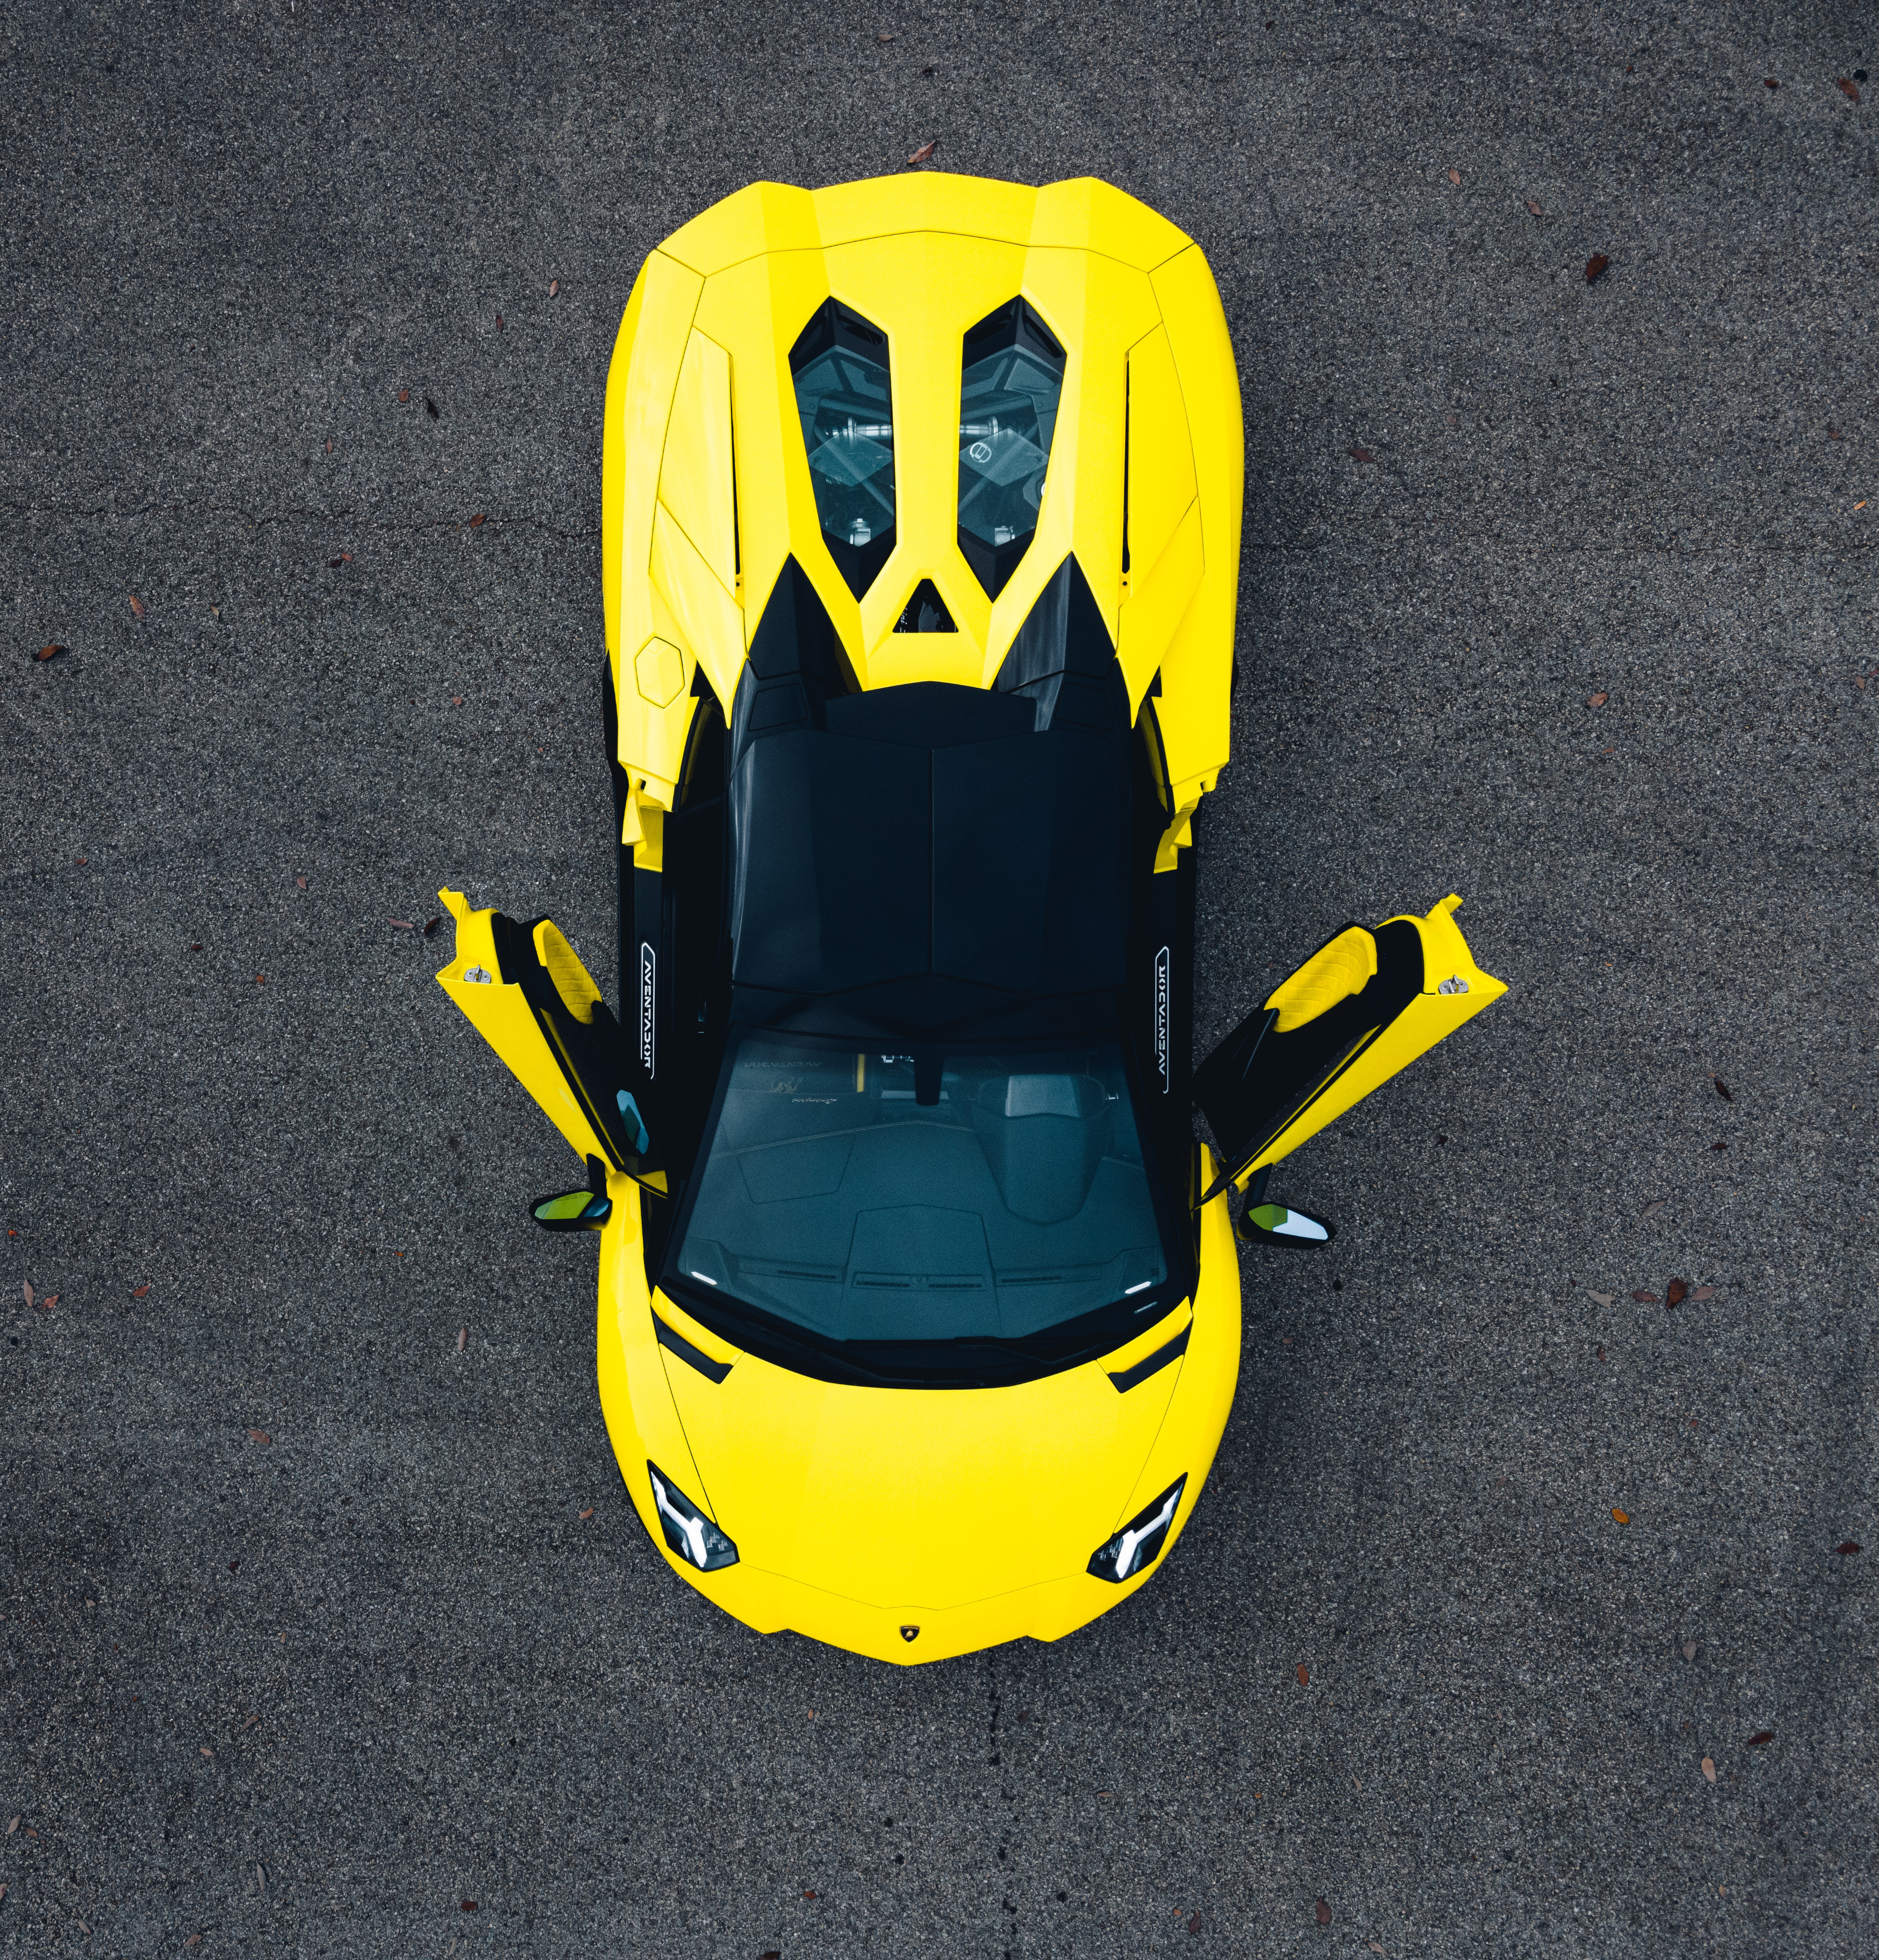 Los mejores fondos de pantalla de Lamborghini para la pantalla del teléfono